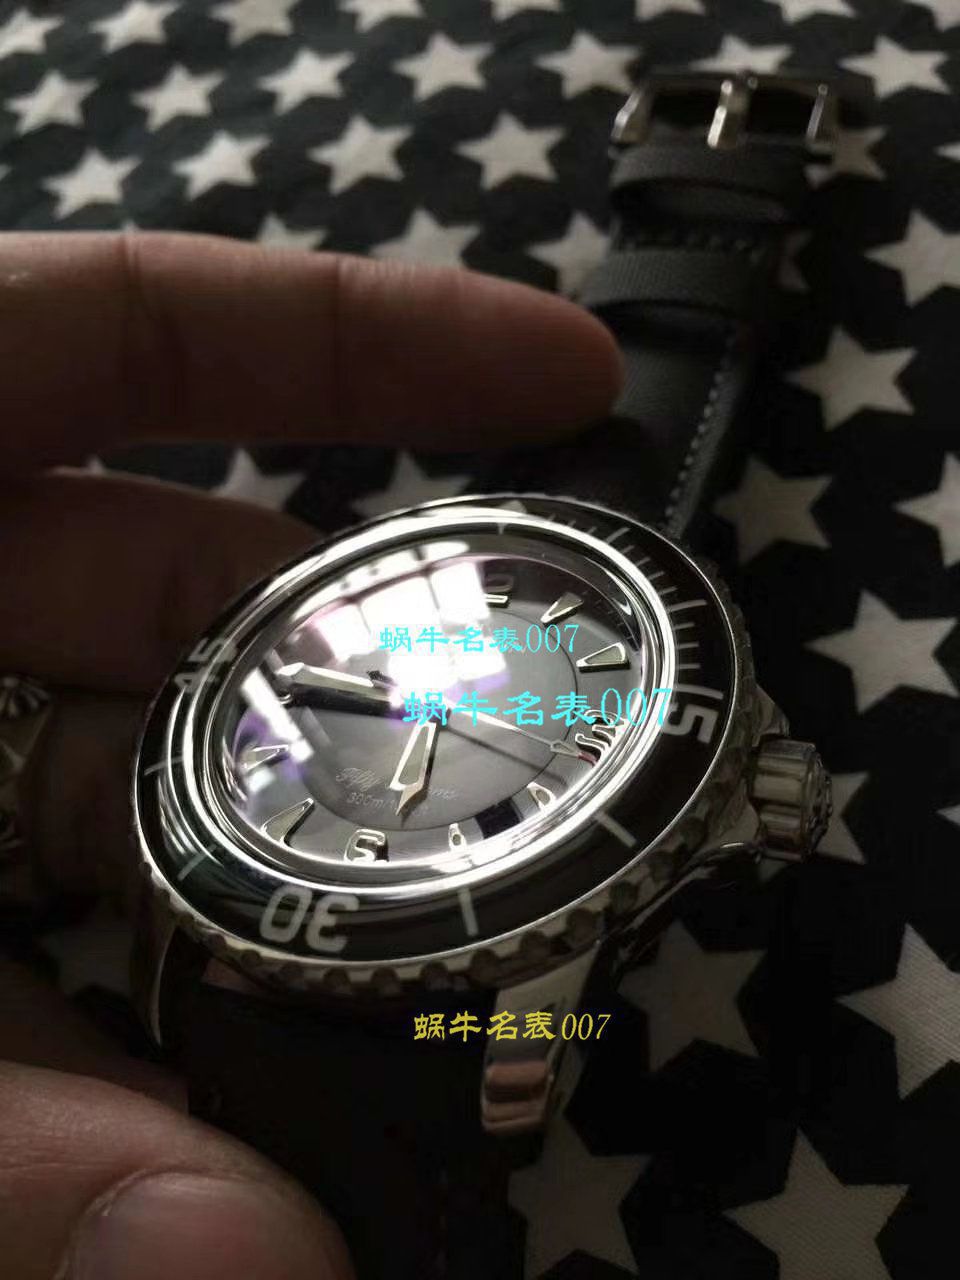 超A高仿宝珀手表【视频评测】高仿宝珀什么价格 / BP071